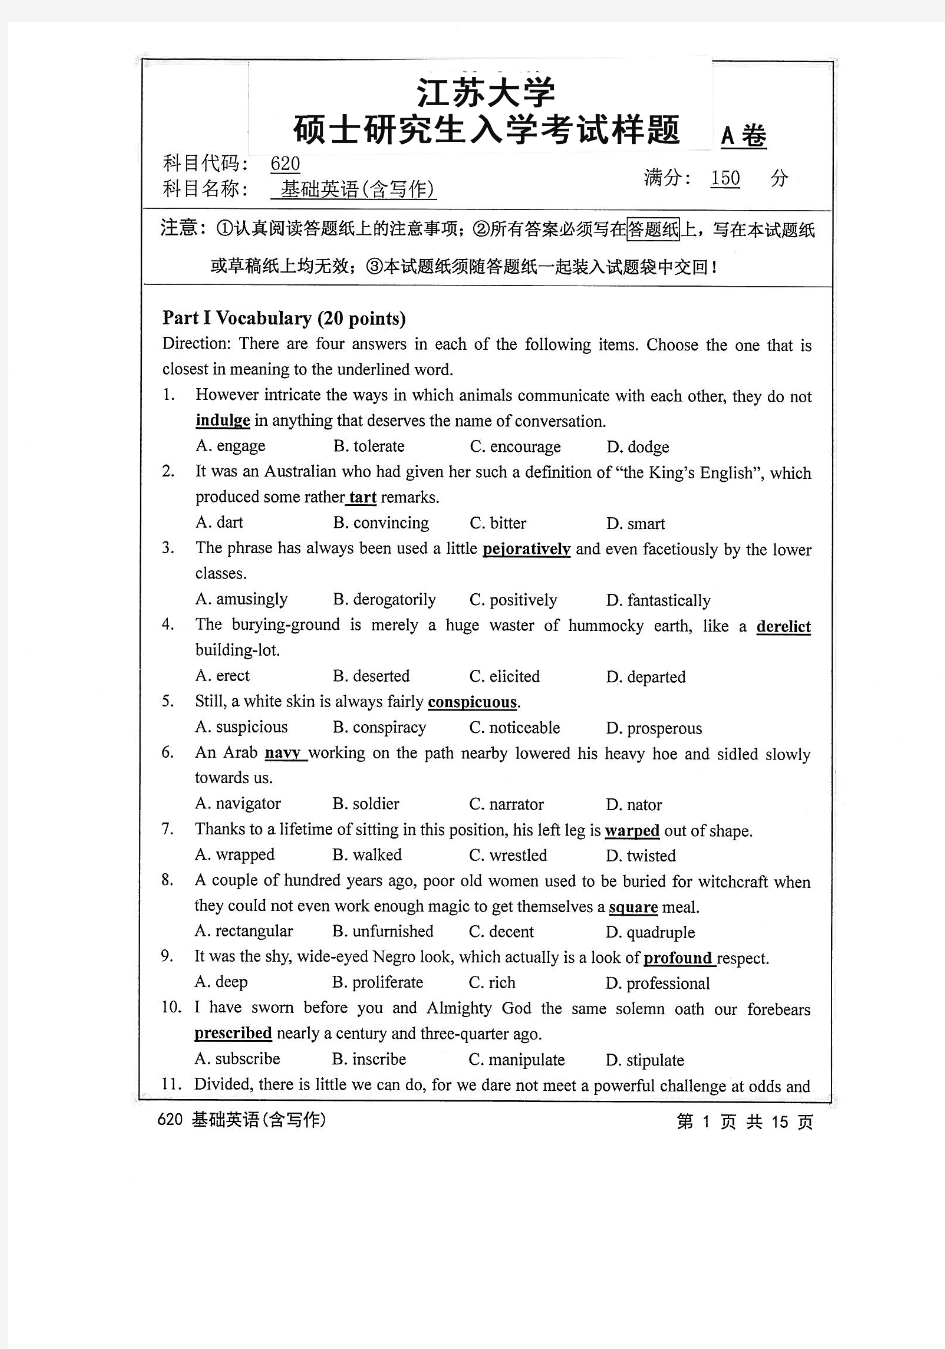 2016年江苏大学620基础英语(含写作)考研真题考研试题硕士研究生入学考试试题